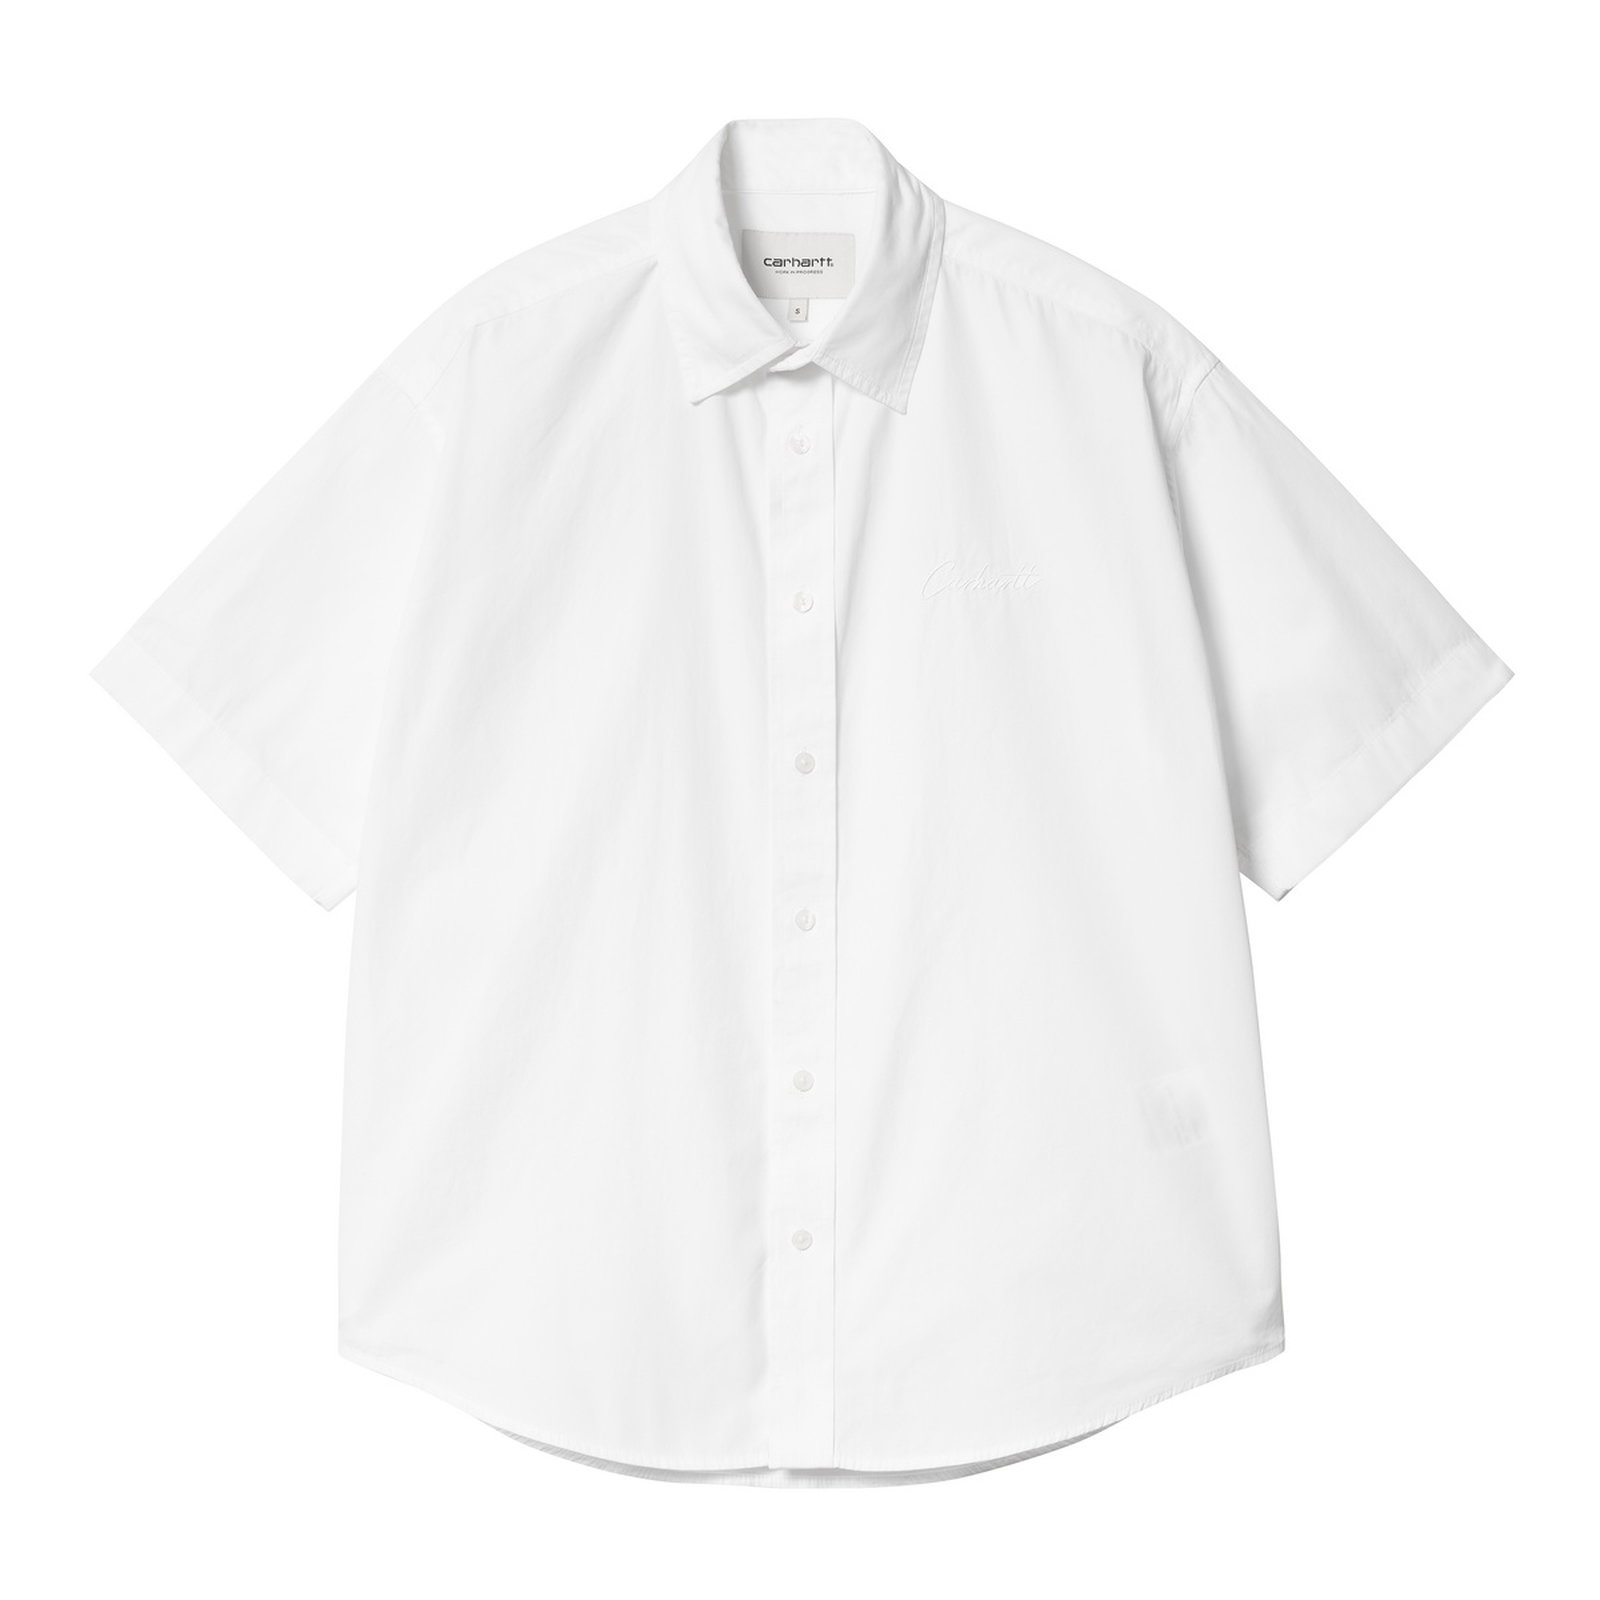 S/S Jaxon Shirt